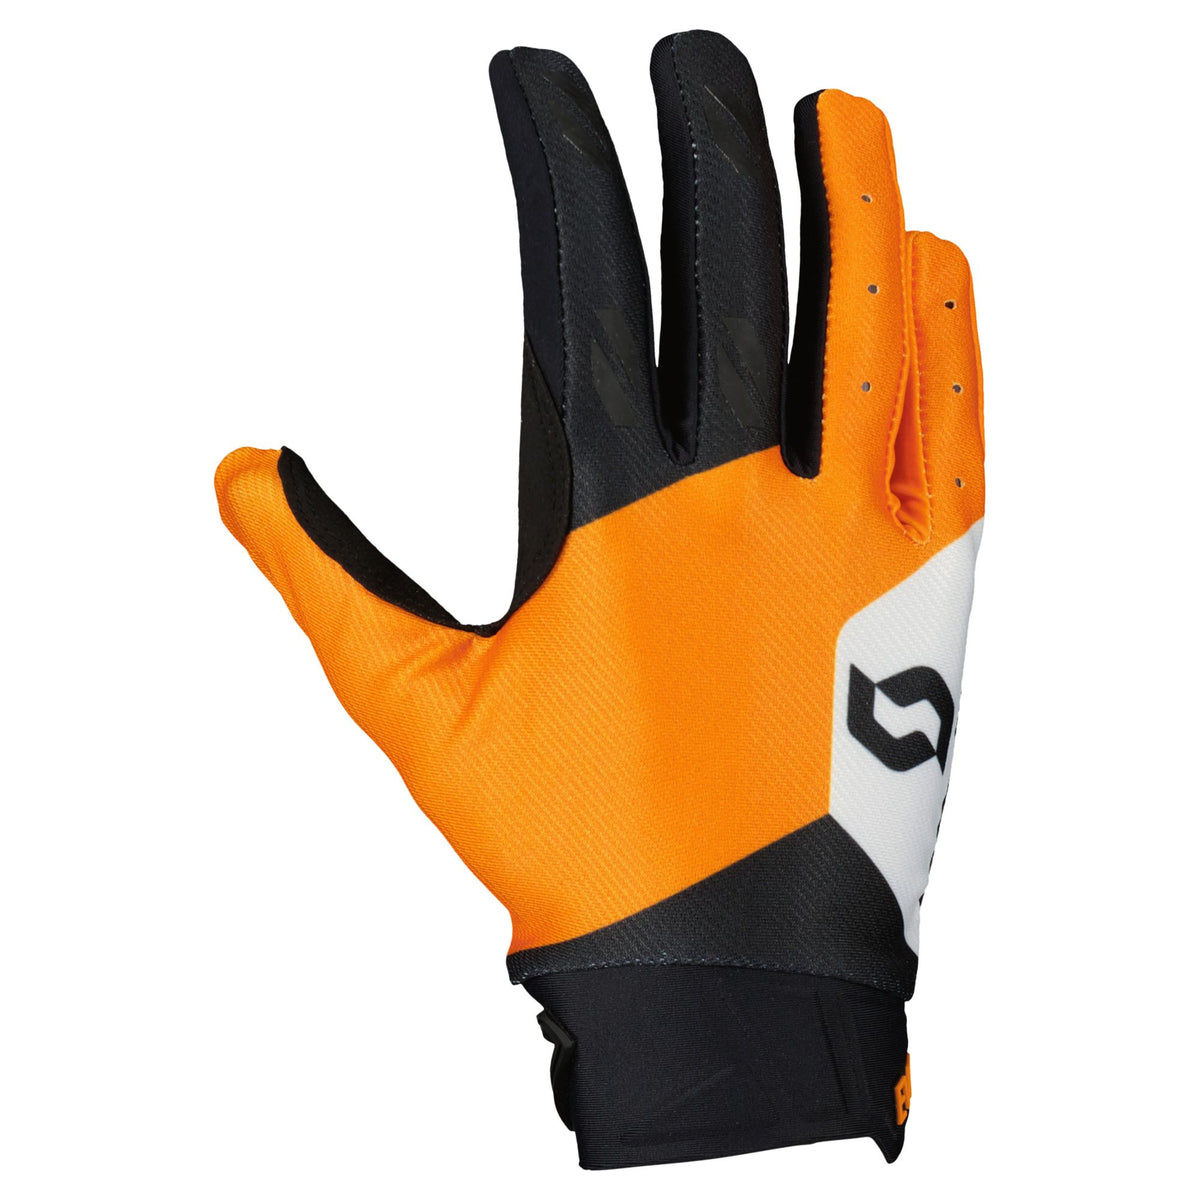 Scott Evo Track Gloves